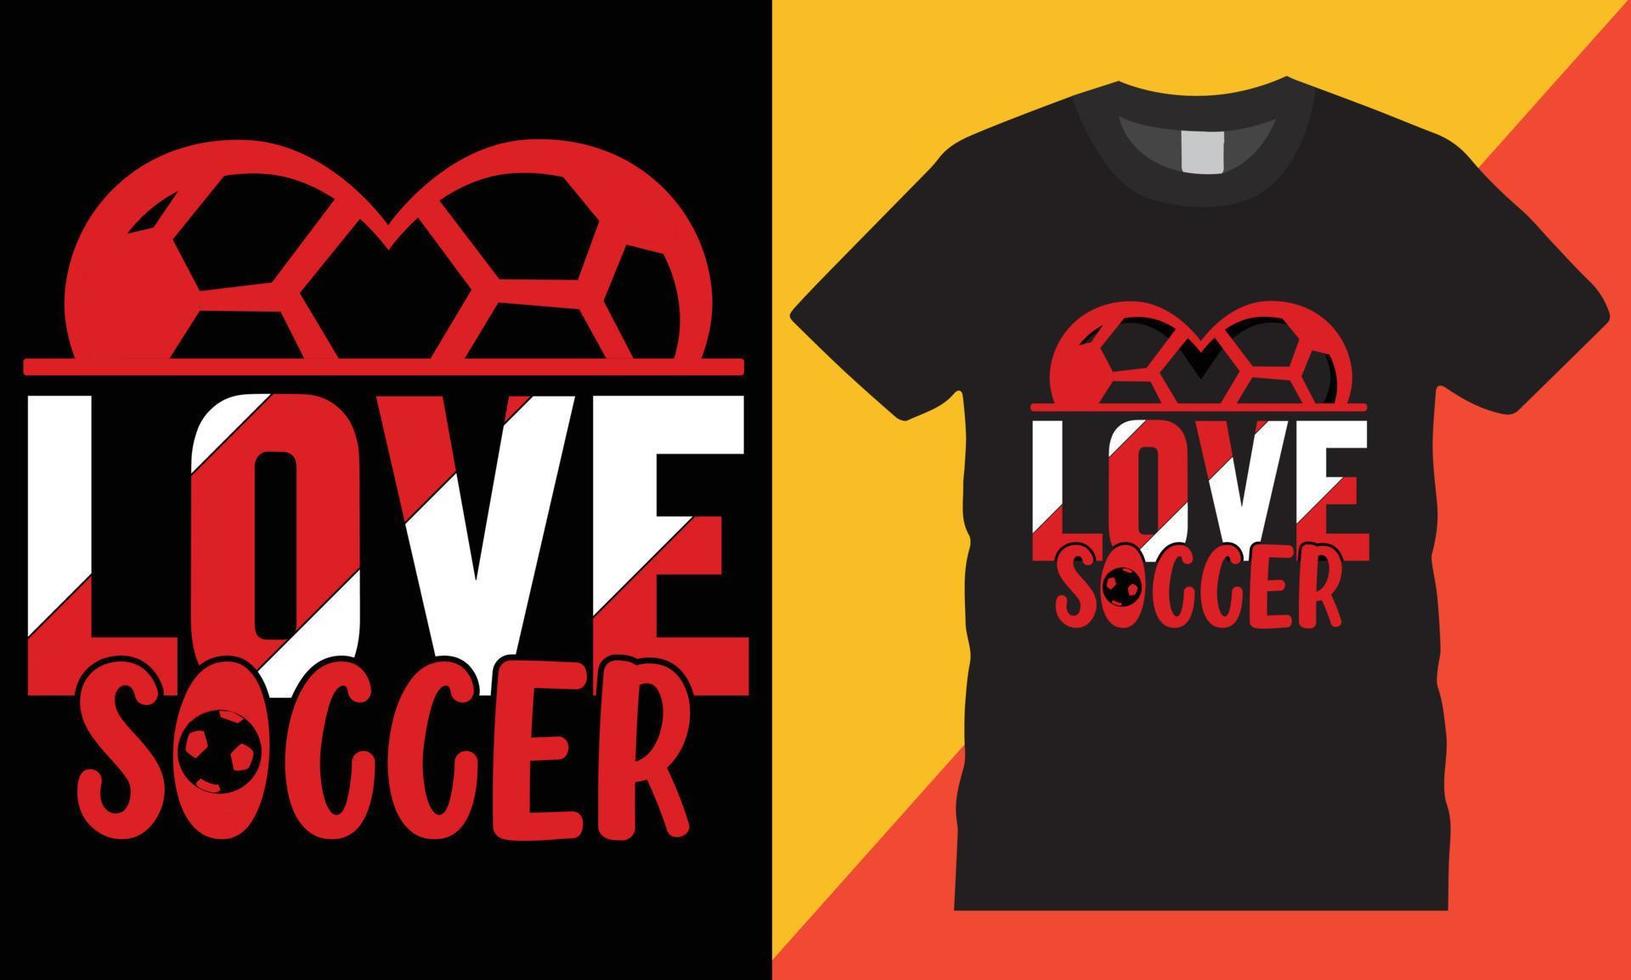 typographie football Créatif T-shirt conception vecteur